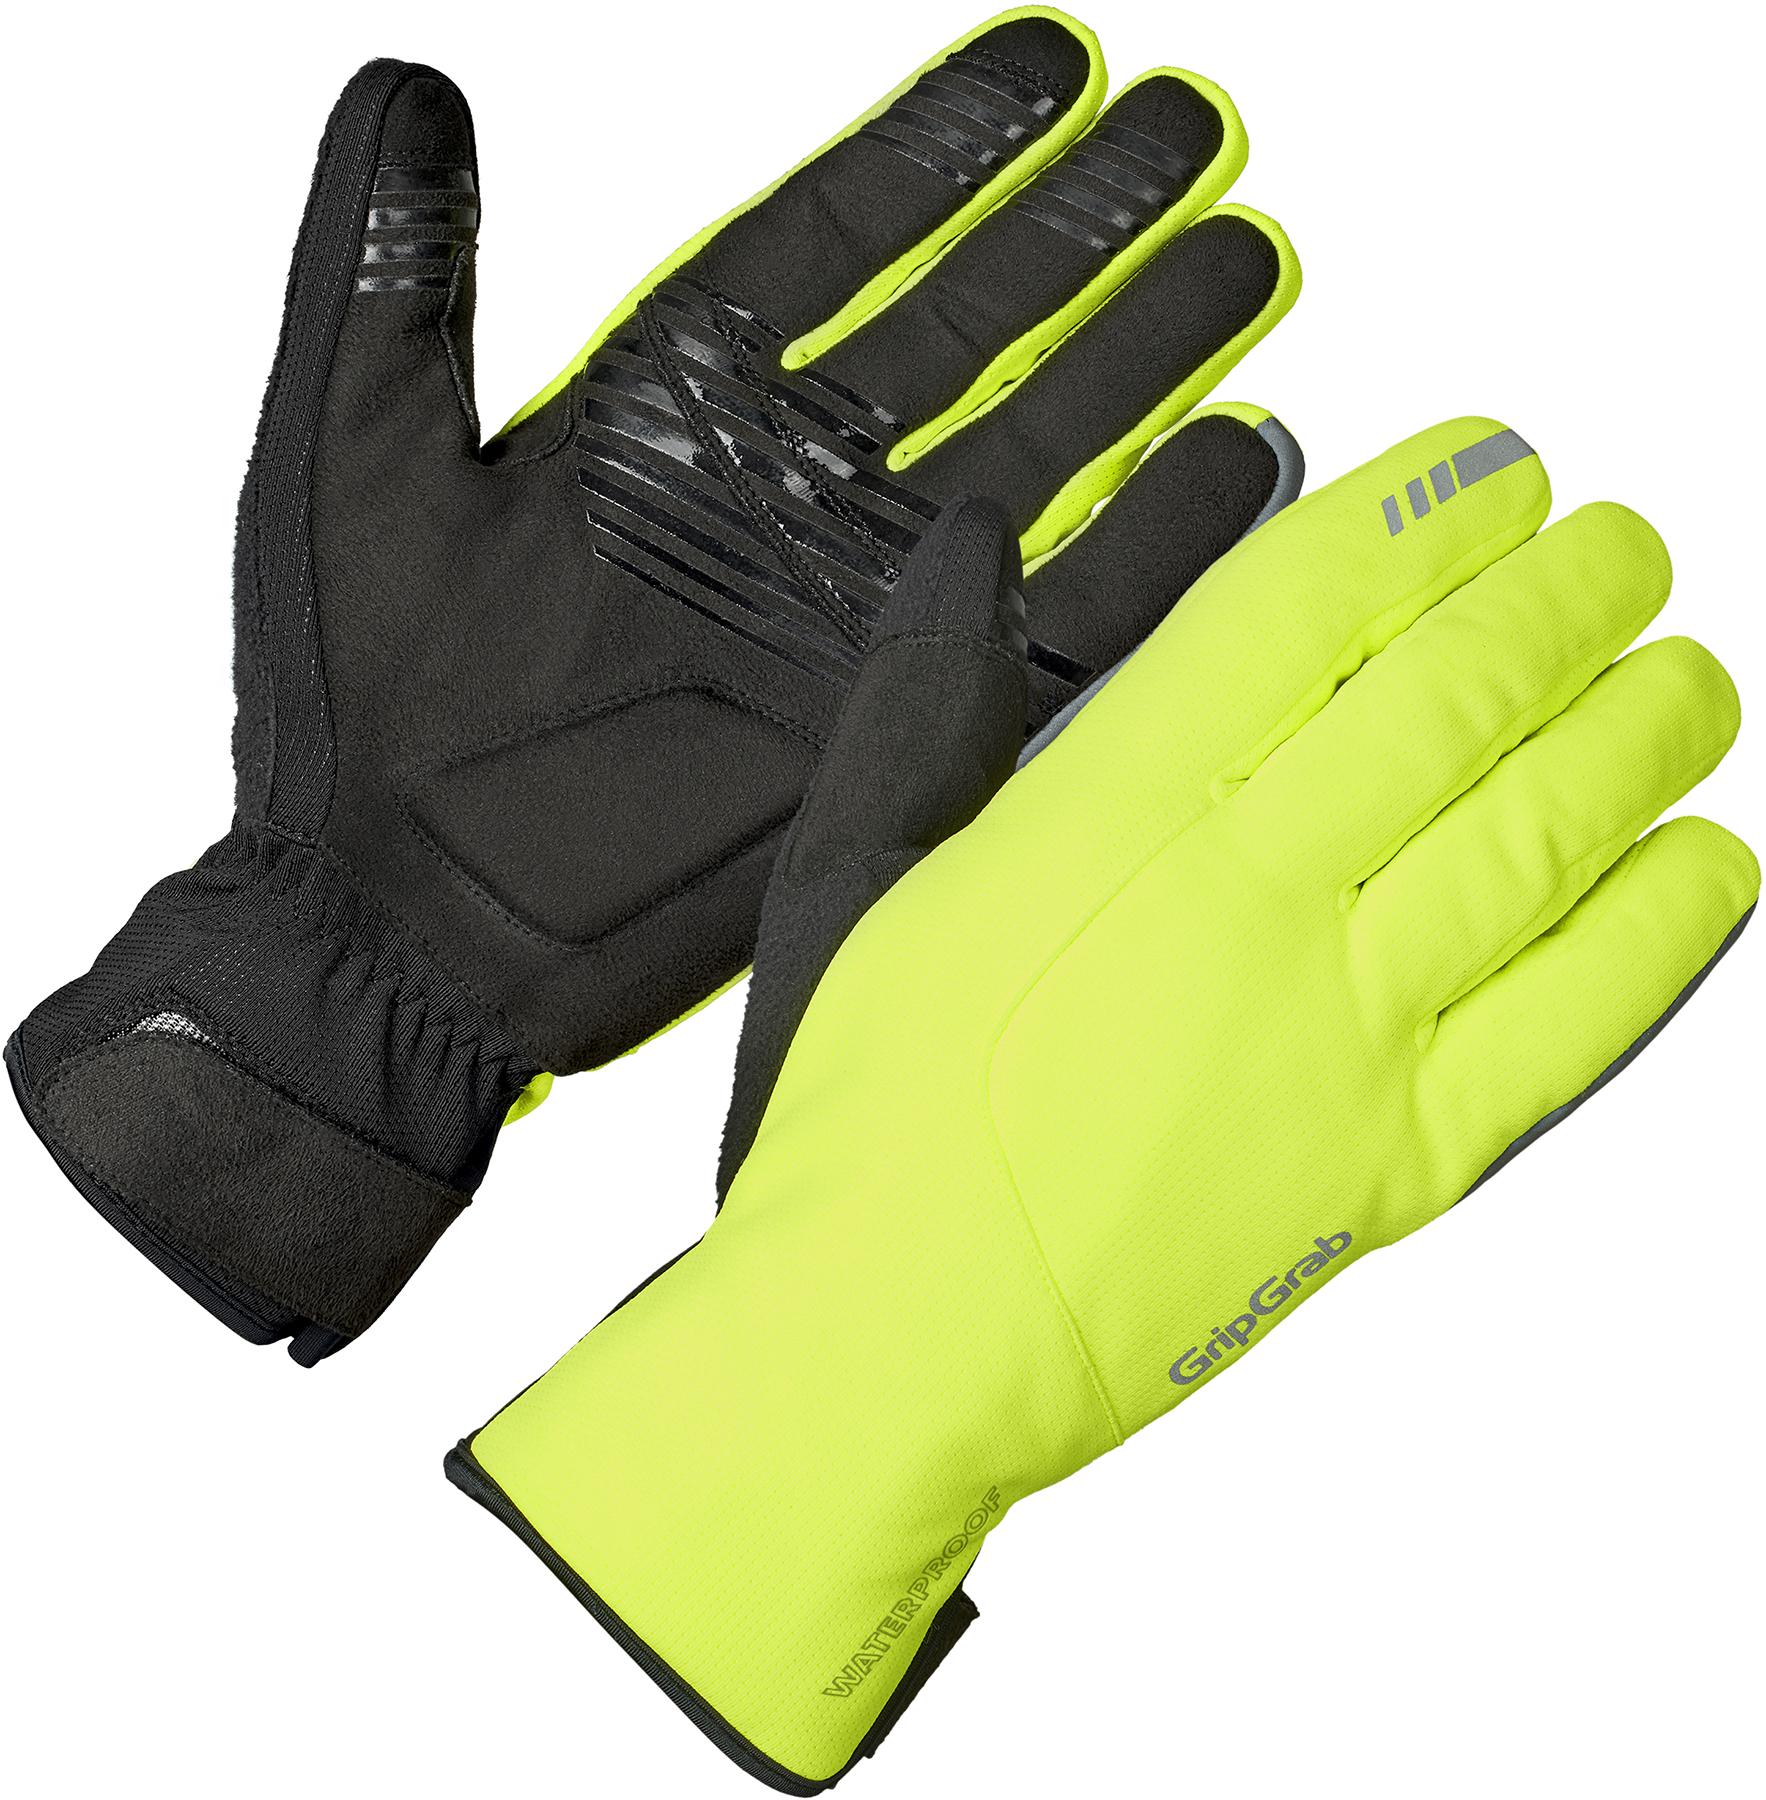 Gripgrab Polaris 2 Waterproof Winter Gloves  Hi-viz Yellow